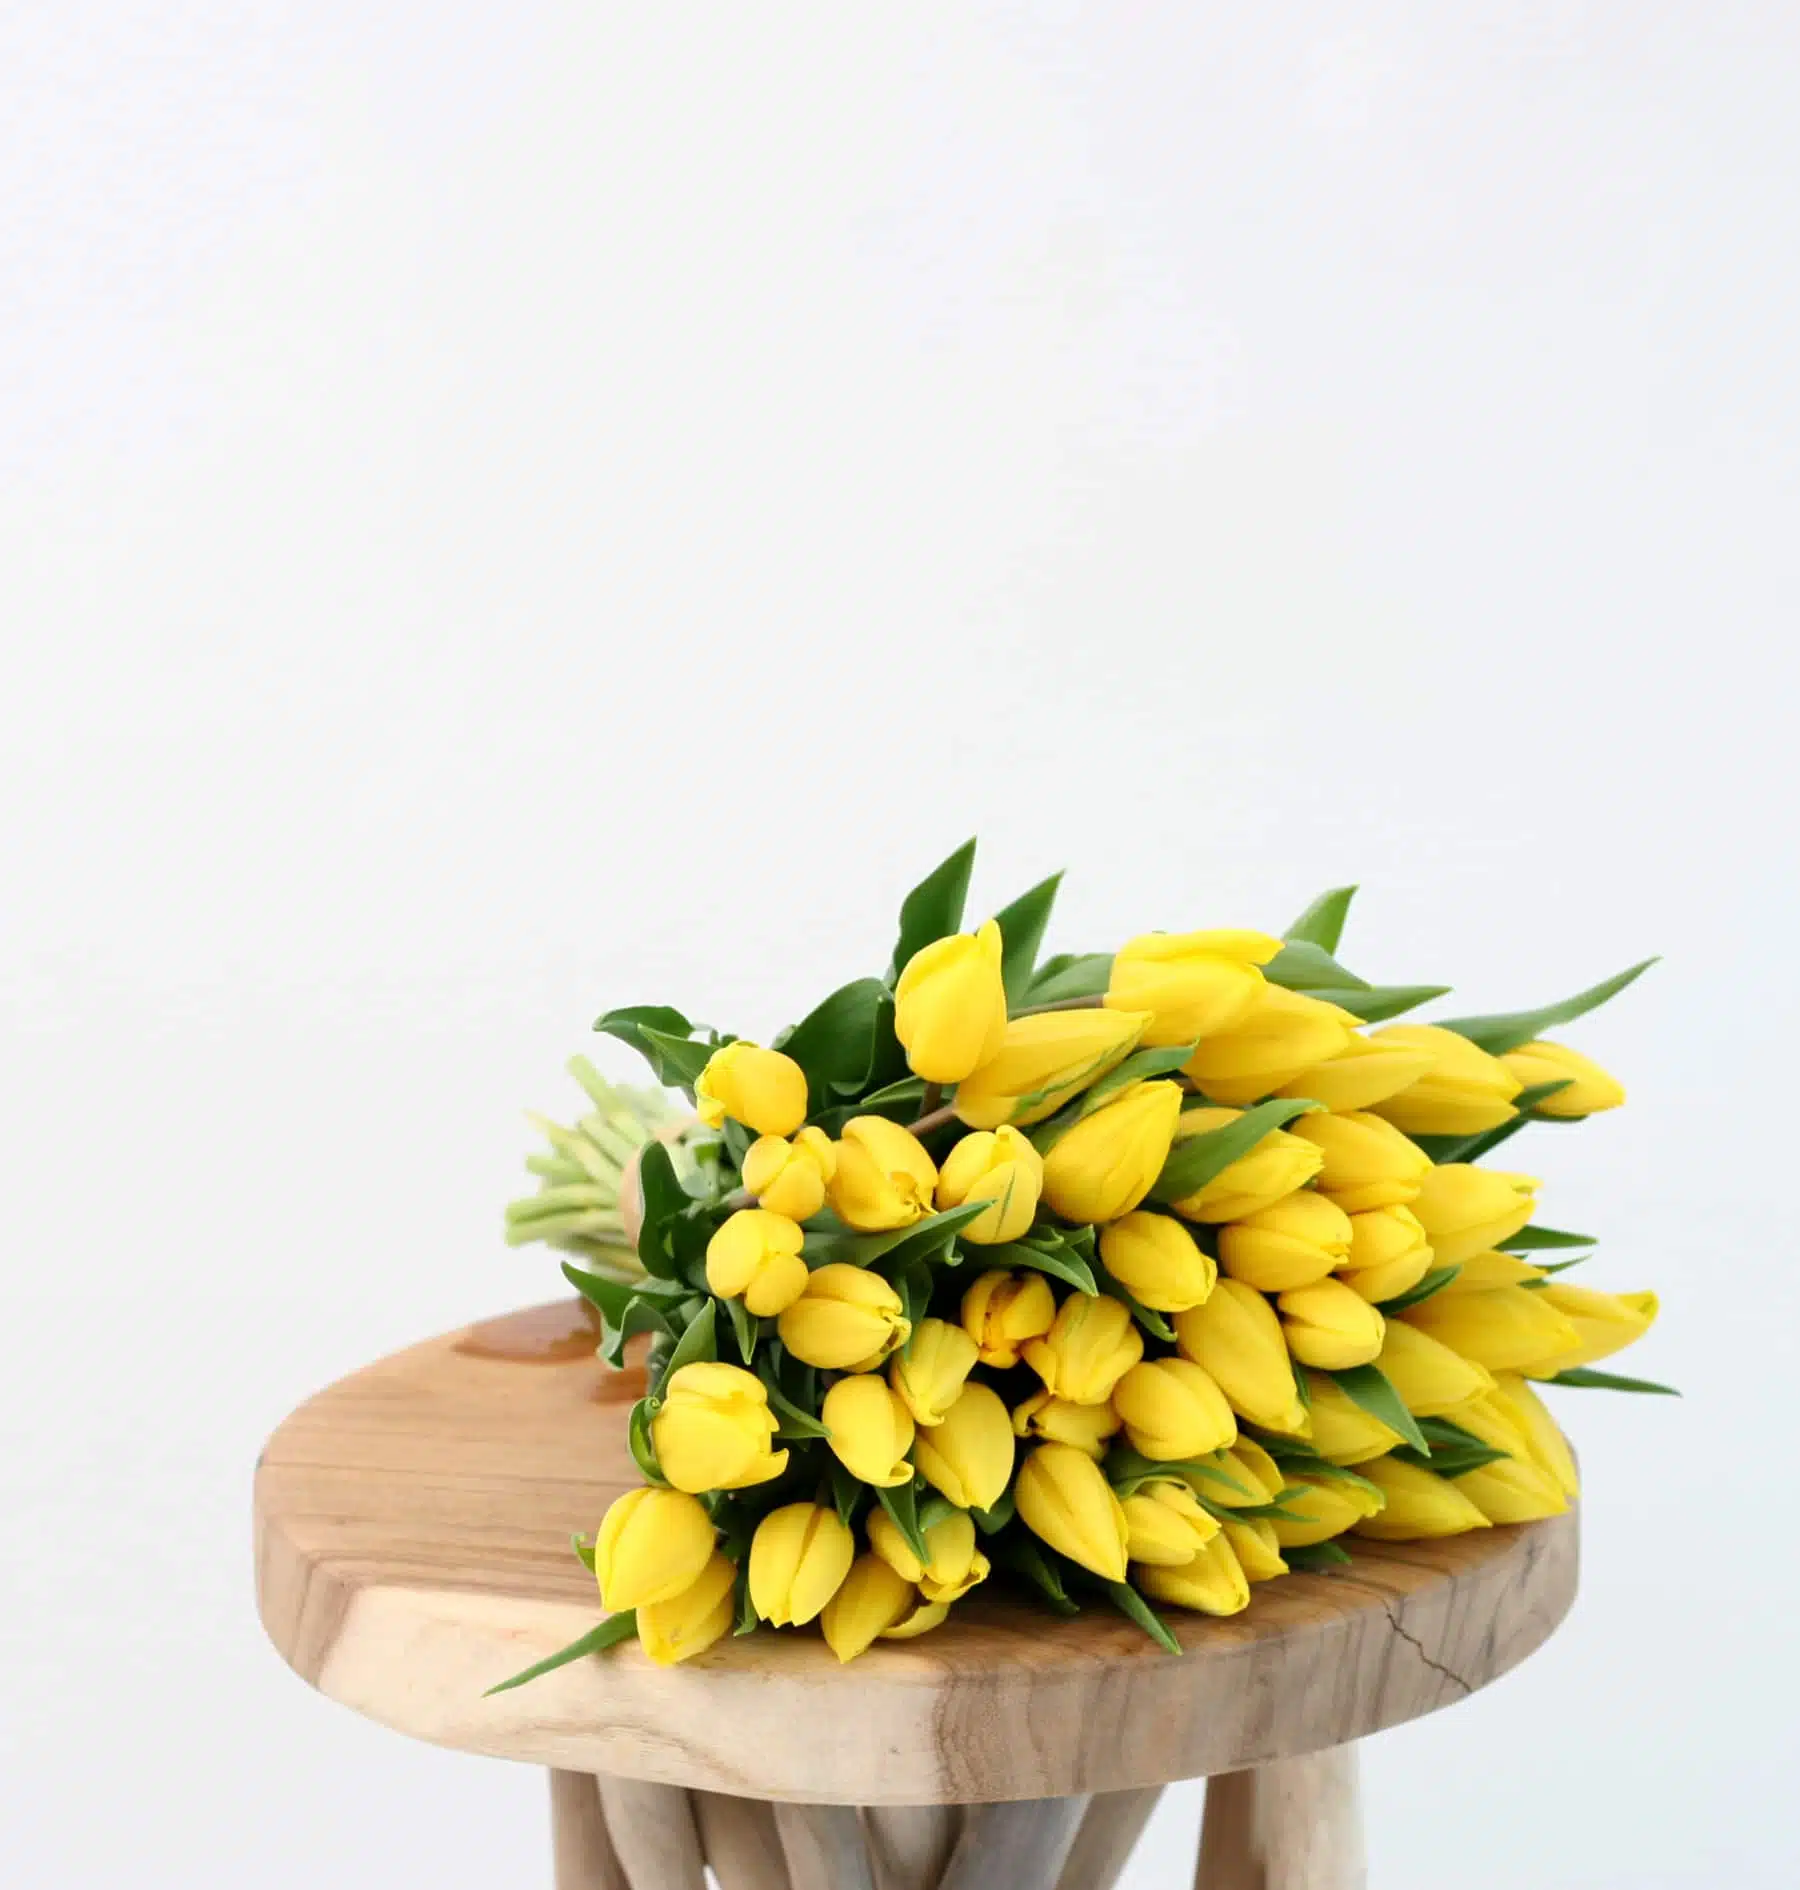 bouquet de tulipes jaunes